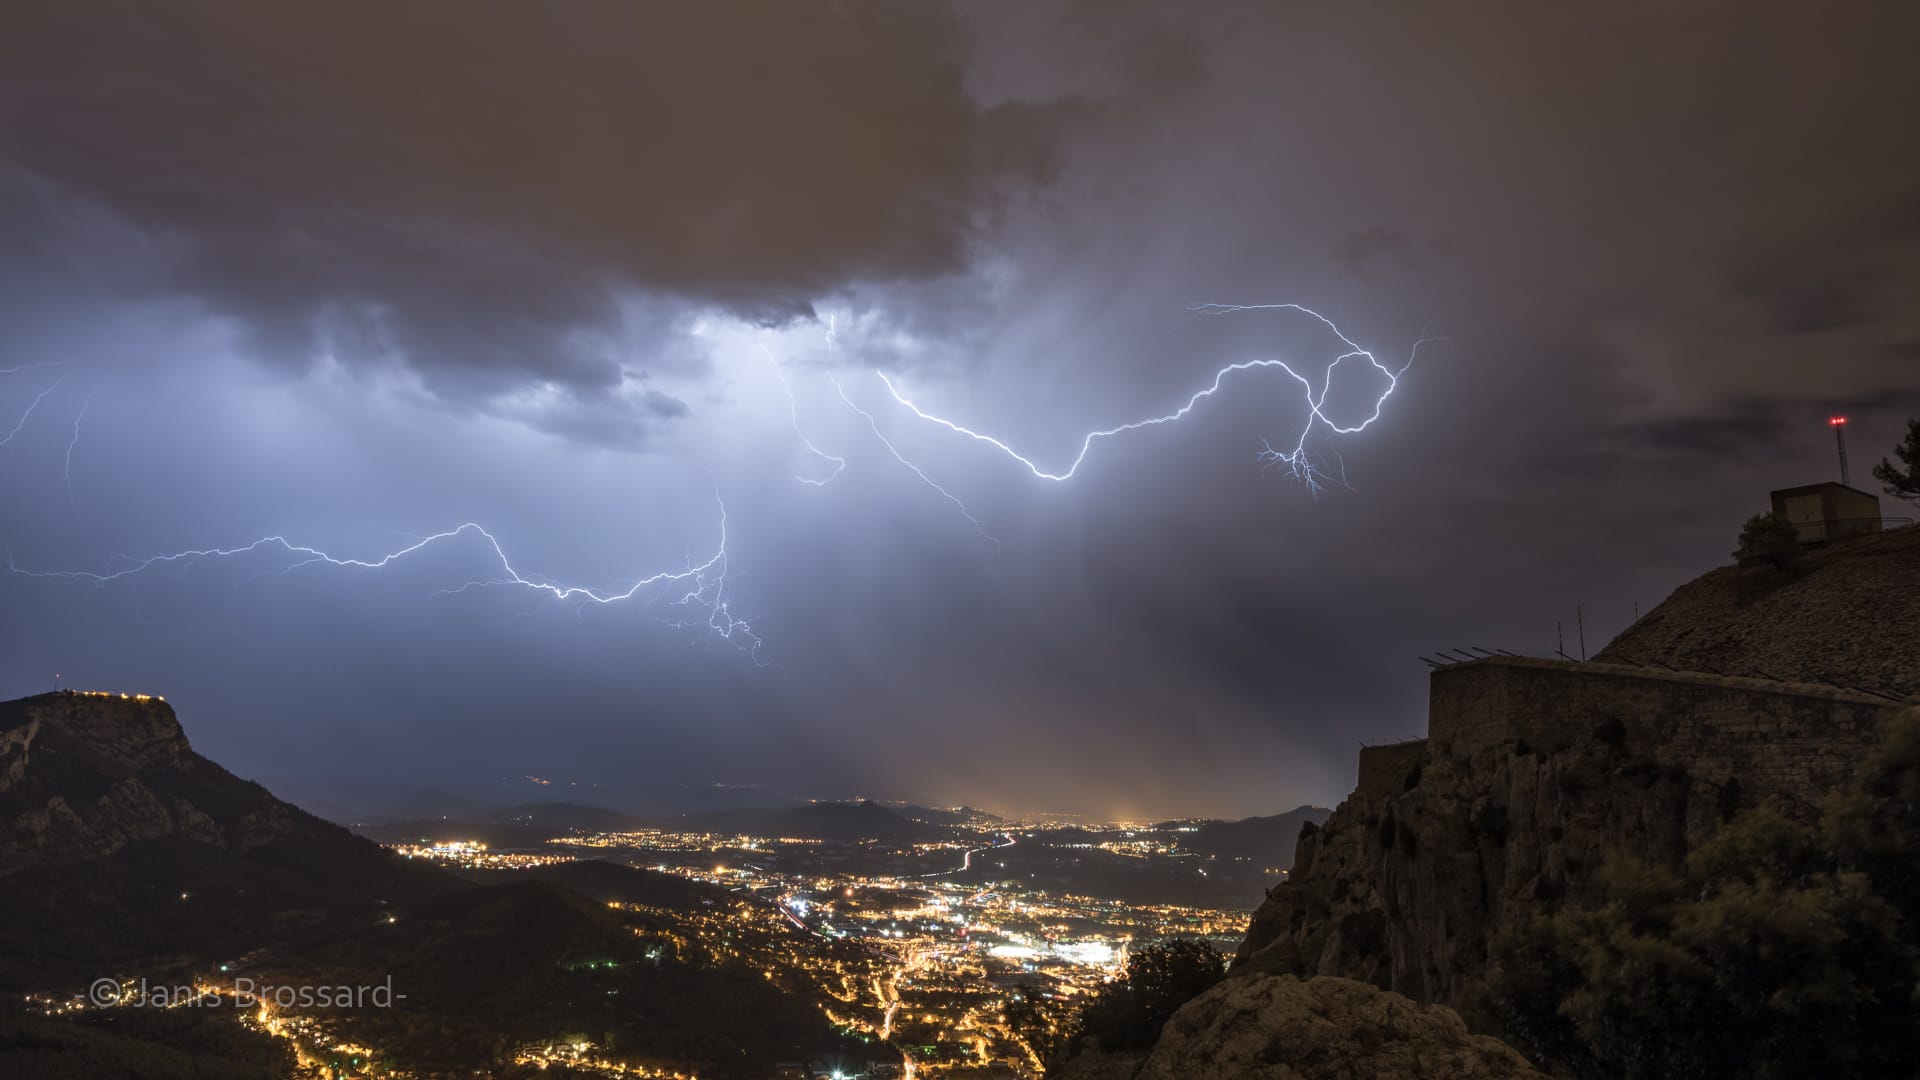 Des orages ont éclaté en début de nuit à l'est de Toulon (83) nous offrant ainsi un spectacle électrique.
Photo réalisée au sommet du Mont Faron, où l'on distingue le Fort à droite et à gauche le Mont Coudon. Au centre la Valette-du-Var. - 31/08/2016 01:43 - Janis BROSSARD